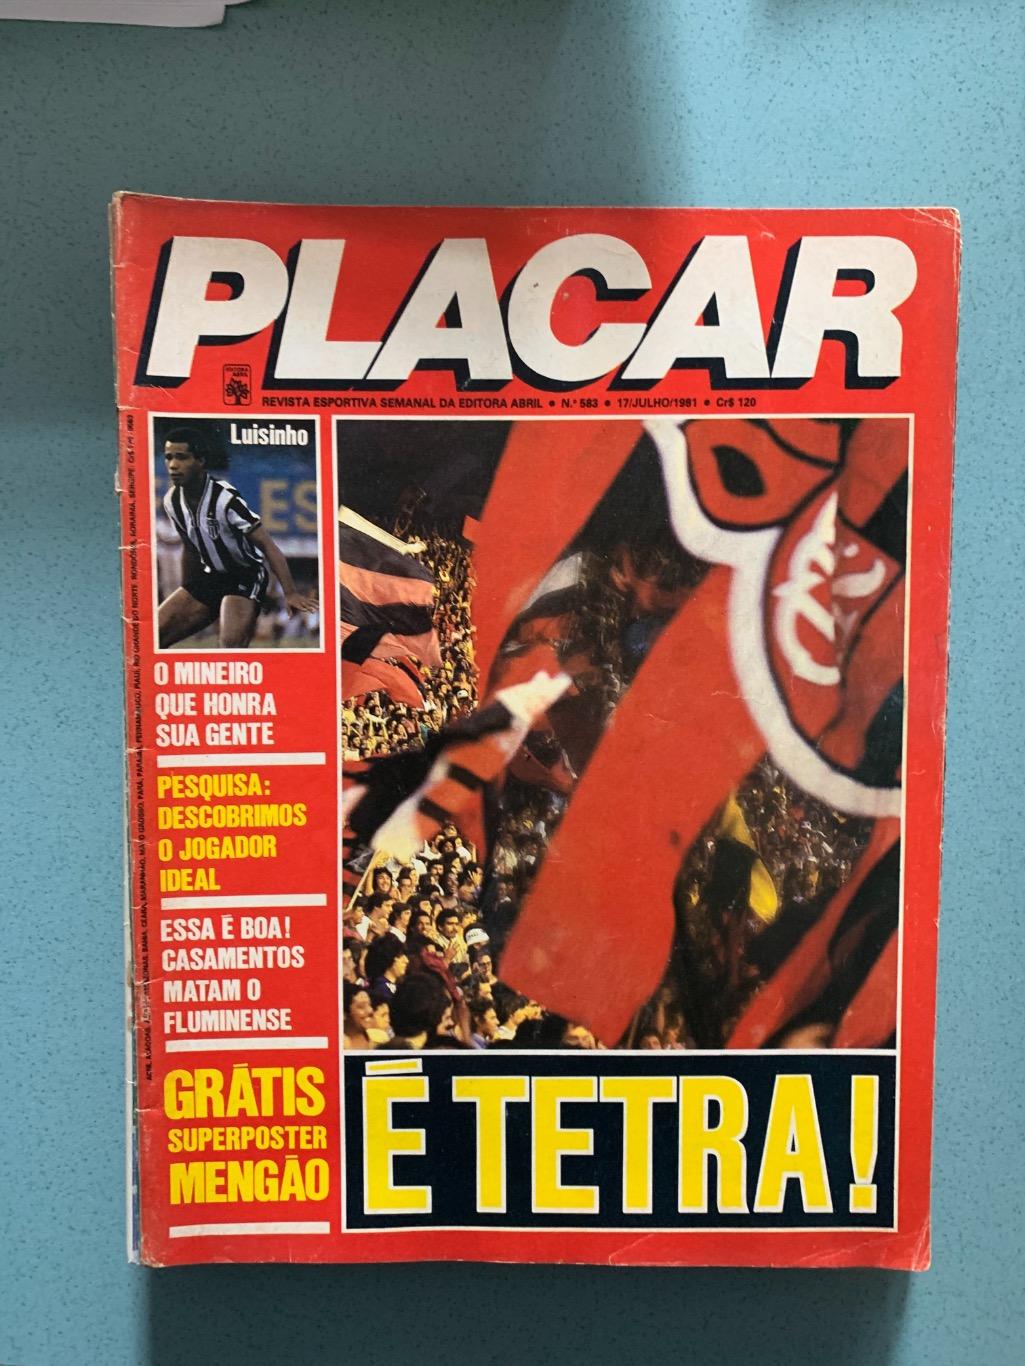 Placar 2 Бразилия на выбор 4